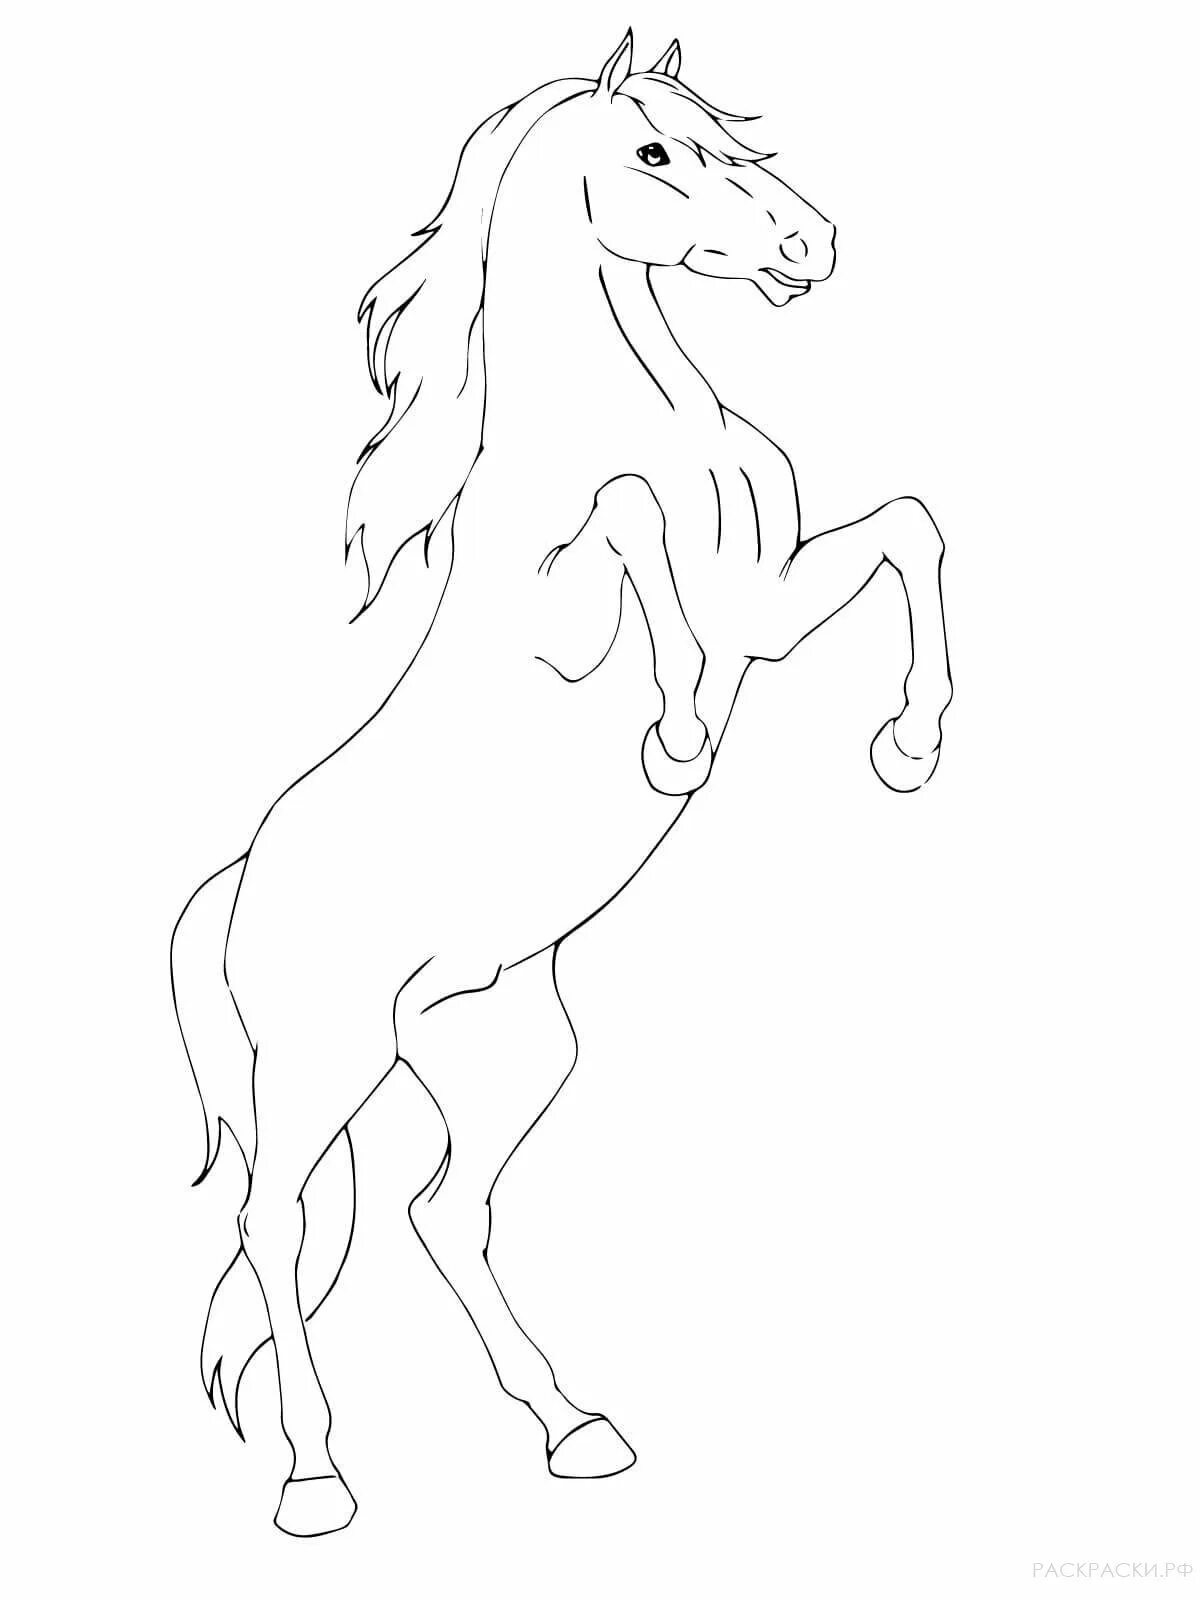 Раскраска лошадь с человеком - 51 фото